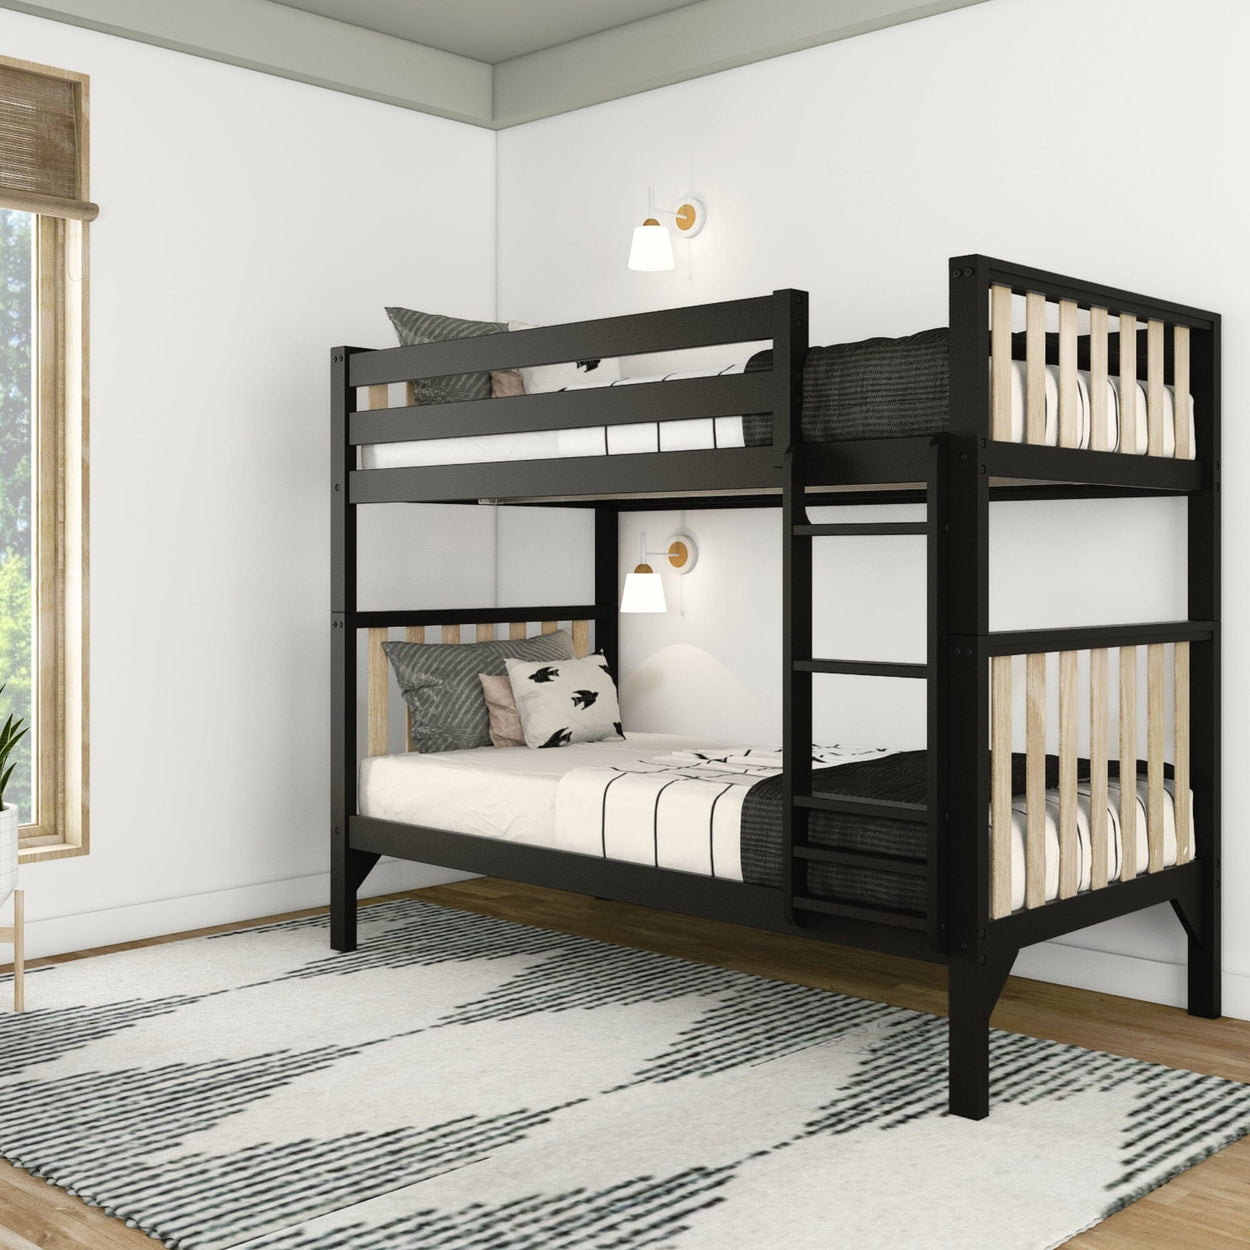 210201-272 : Bunk Beds Scandinavian Twin over Twin Bunk Bed, Black/Blonde